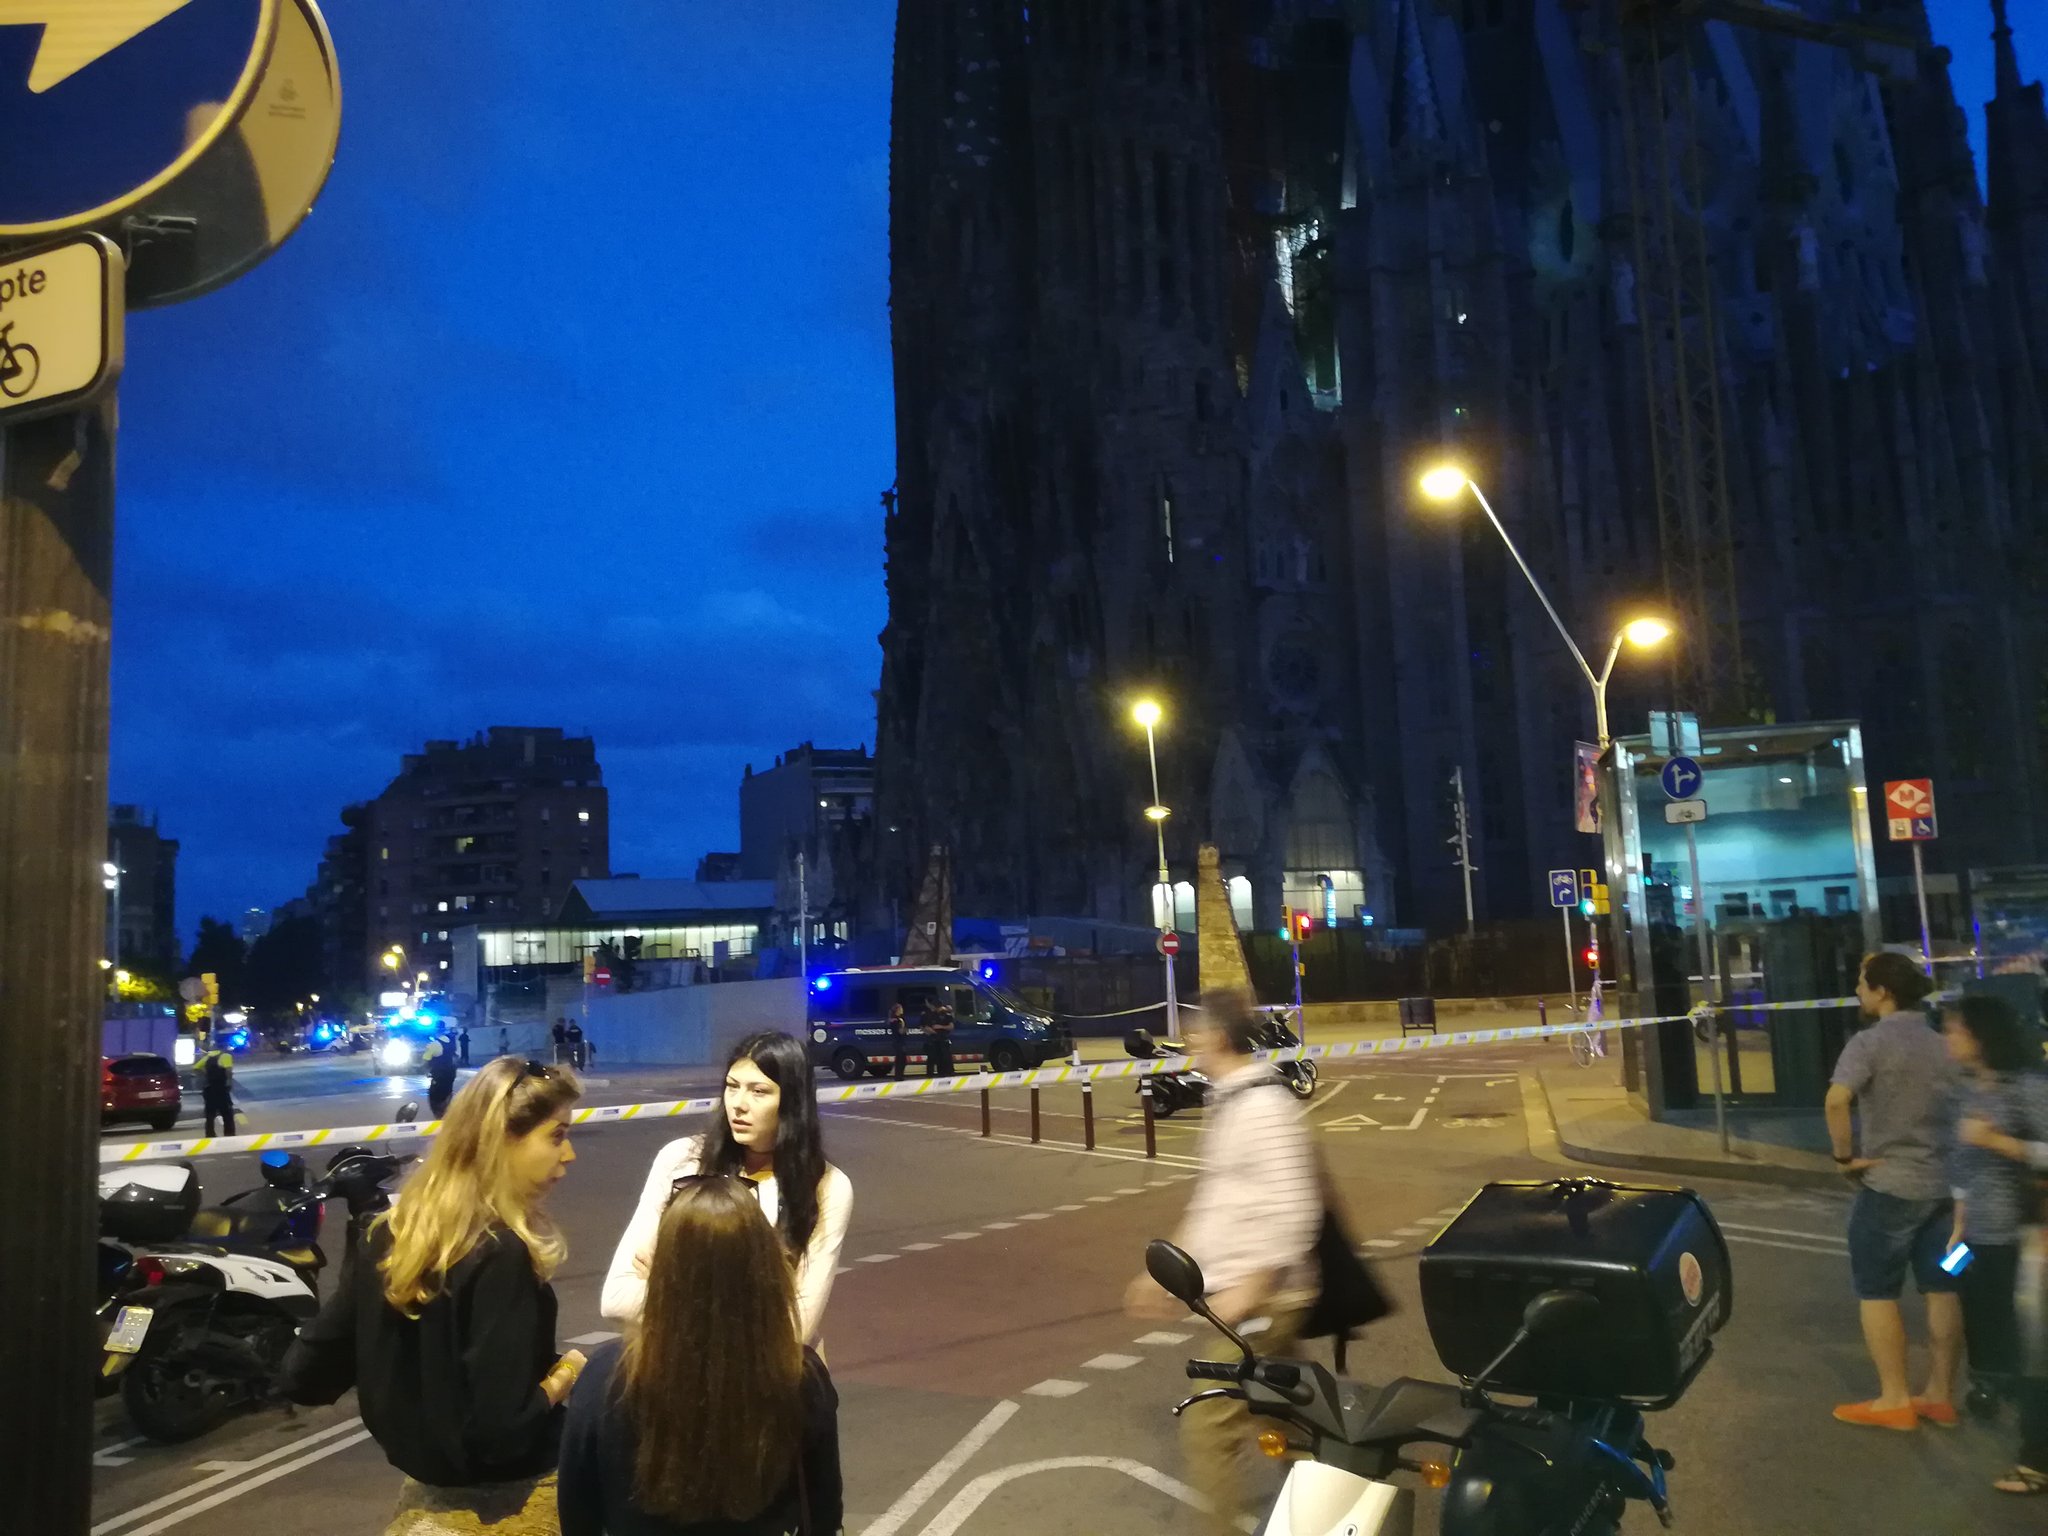 False alarm at Sagrada Familia